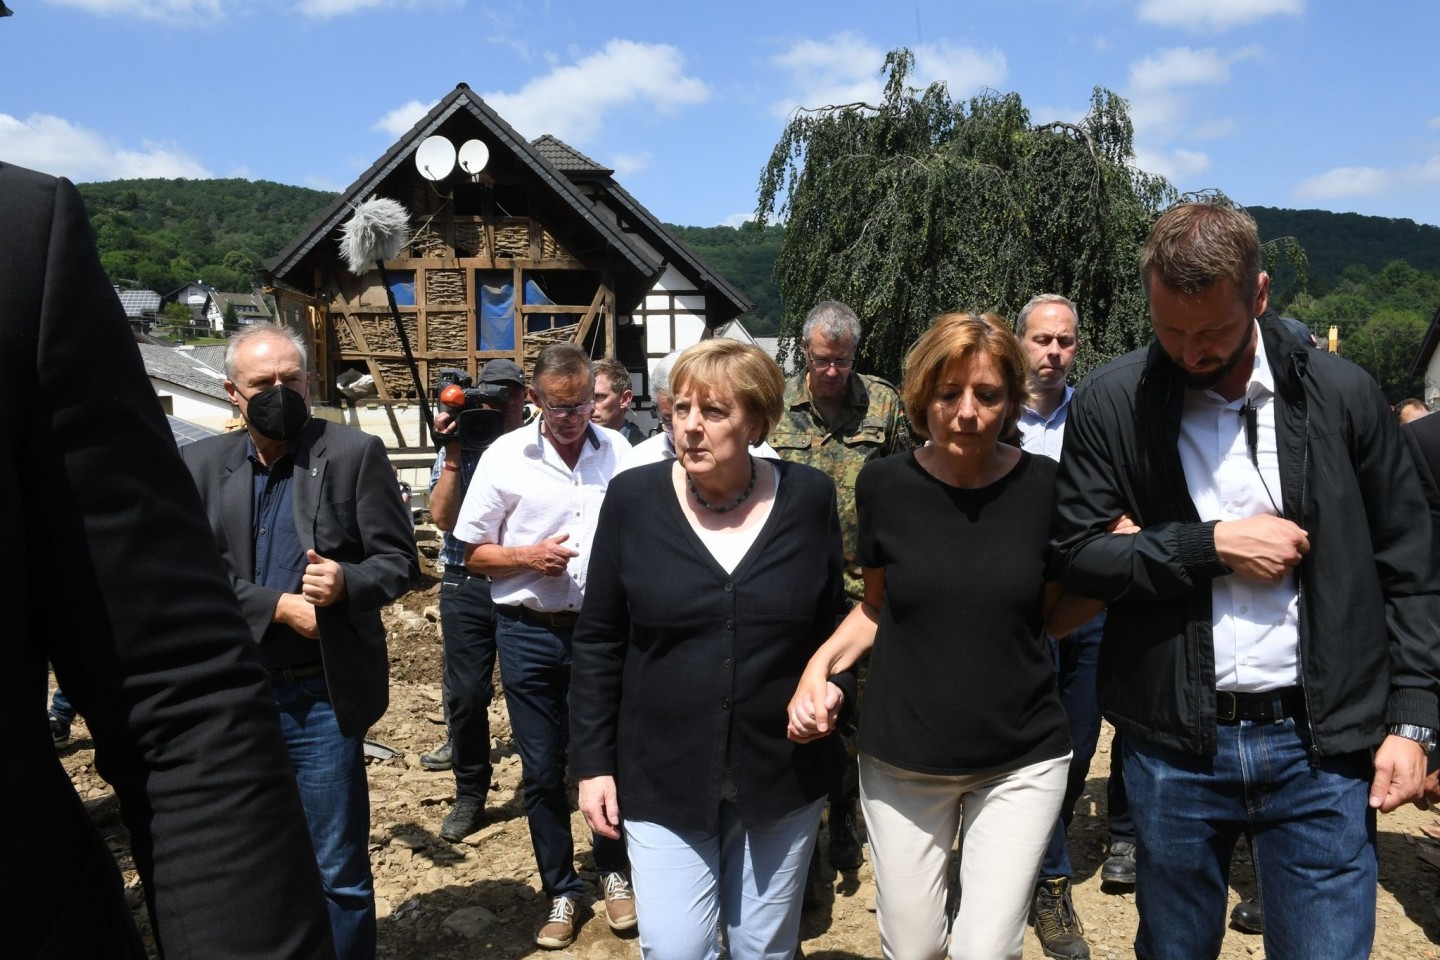 Kanzlerin im Katastrophengebiet: Begleitet von Rheinland-Pfalz' Ministerpräsidentin Malu Dreyer hat Angela Merkel den Hochwasser-Hotspot Schuld besucht.